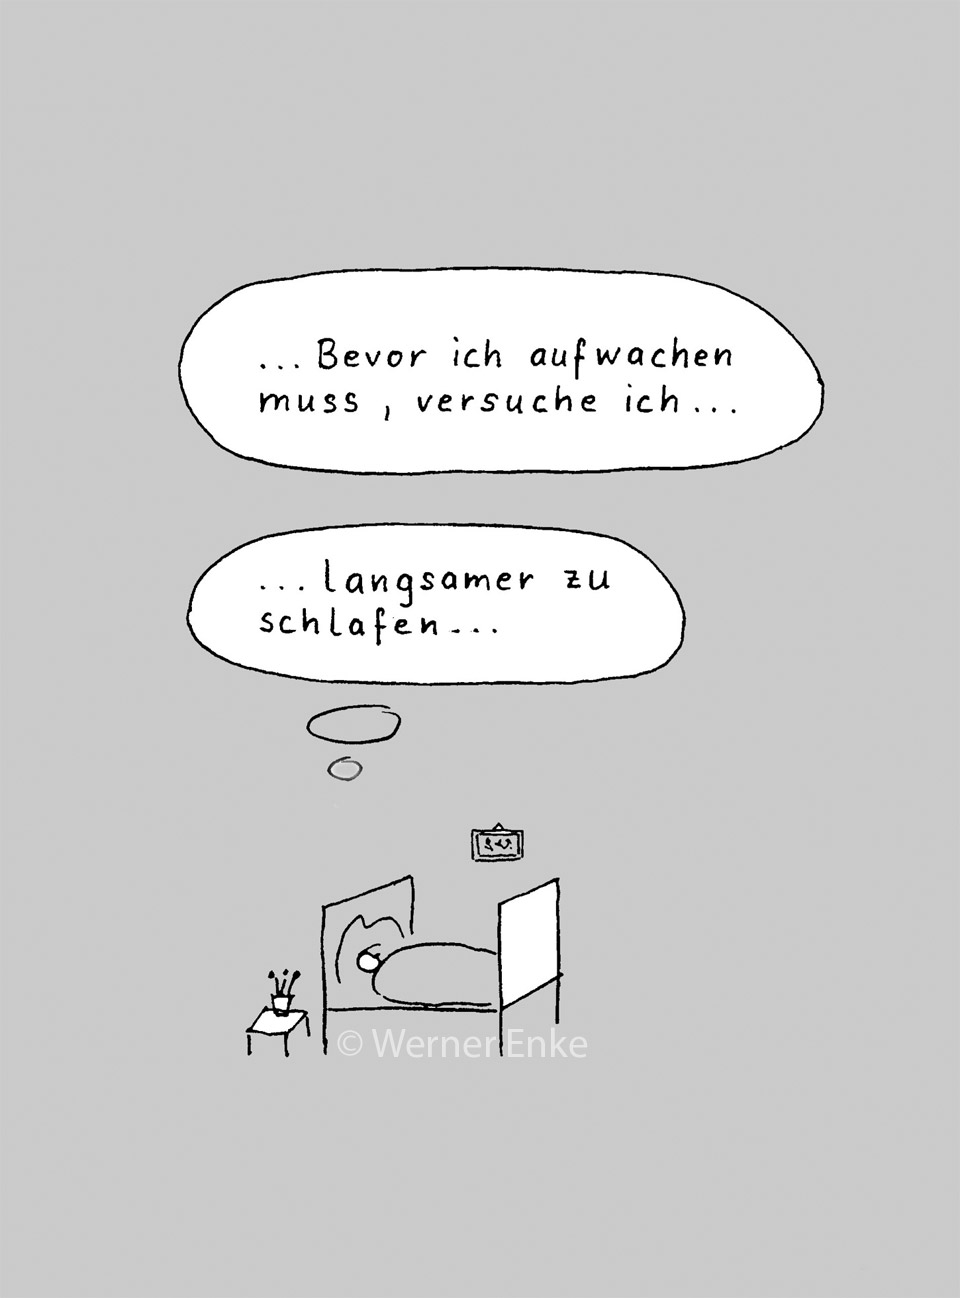 Lustiger Comic-Cartoon über das Schlafen mit Gedanken des Schläfers "Bevor ich aufwachen muss, versuche ich ... langsamer zu schlafen